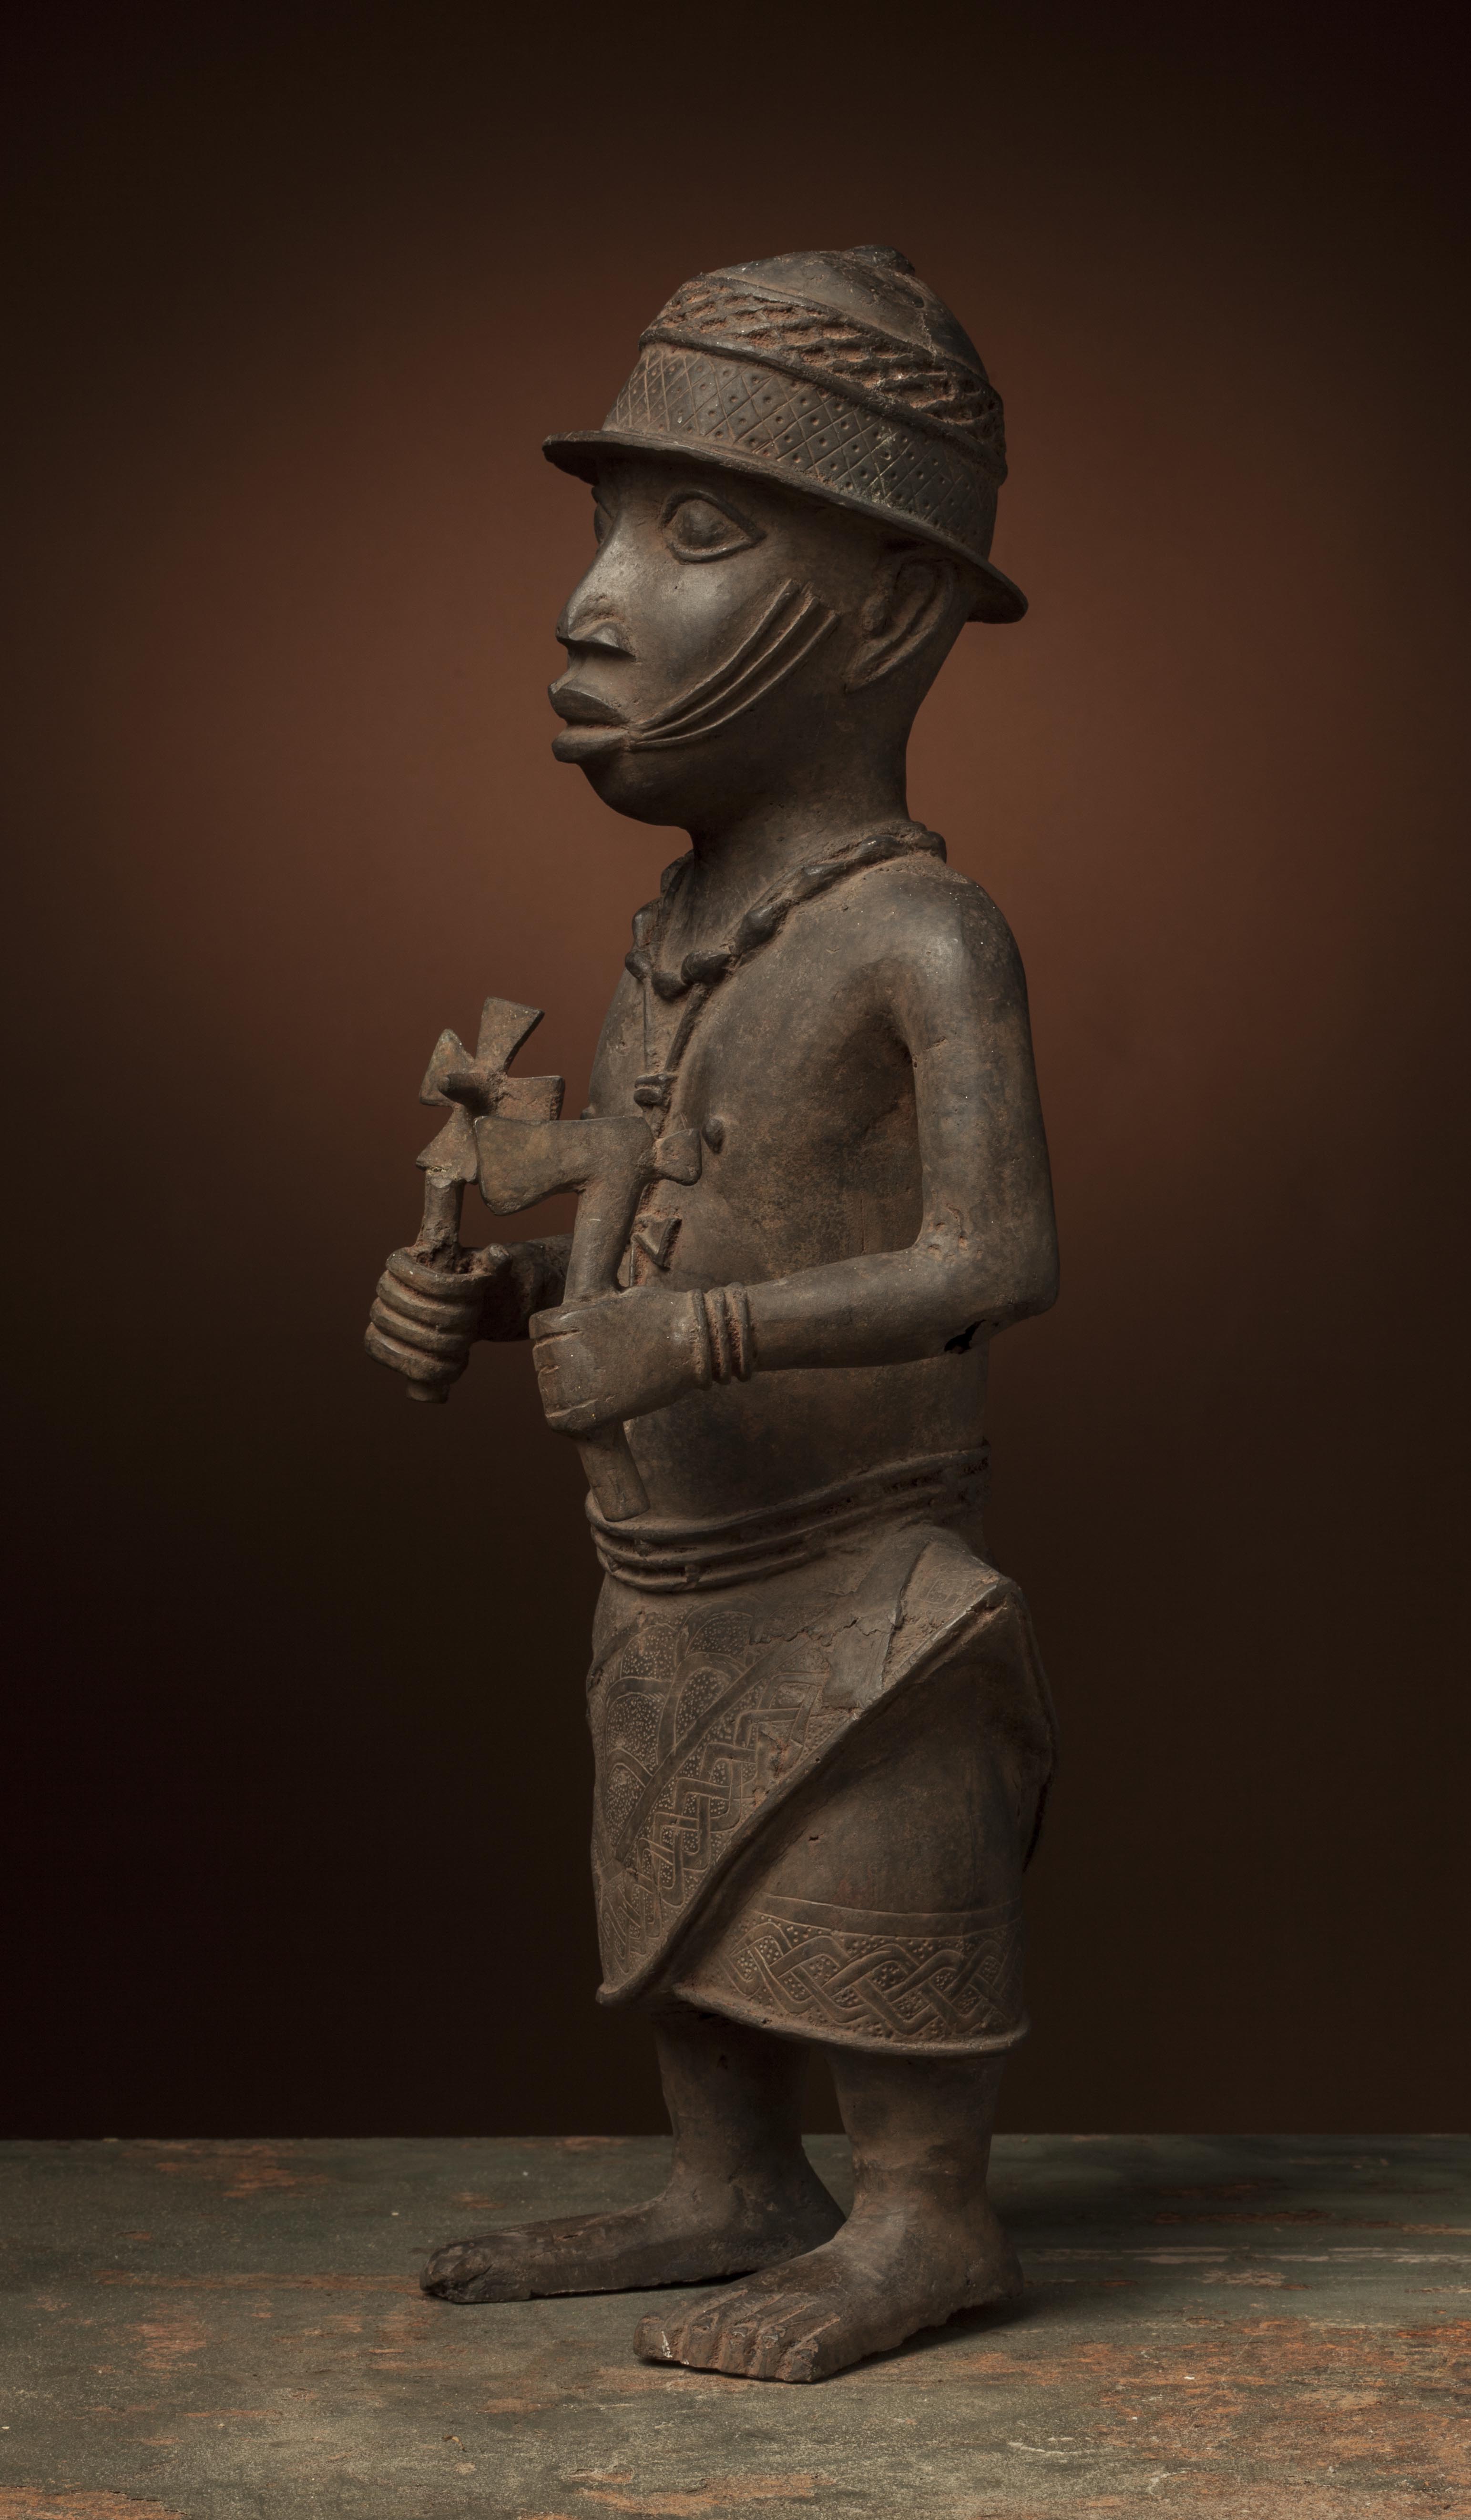 Br.  Bénin (statue), d`afrique : Bénin, statuette Br.  Bénin (statue), masque ancien africain Br.  Bénin (statue), art du Bénin - Art Africain, collection privées Belgique. Statue africaine de la tribu des Br.  Bénin (statue), provenant du Bénin, 63O/75.Statue en bronze.dignitaire portant un casque,un collier et un pendentif avec croix autour du cou,portant dans la main gauche une hache et dans la droite la même croix qu